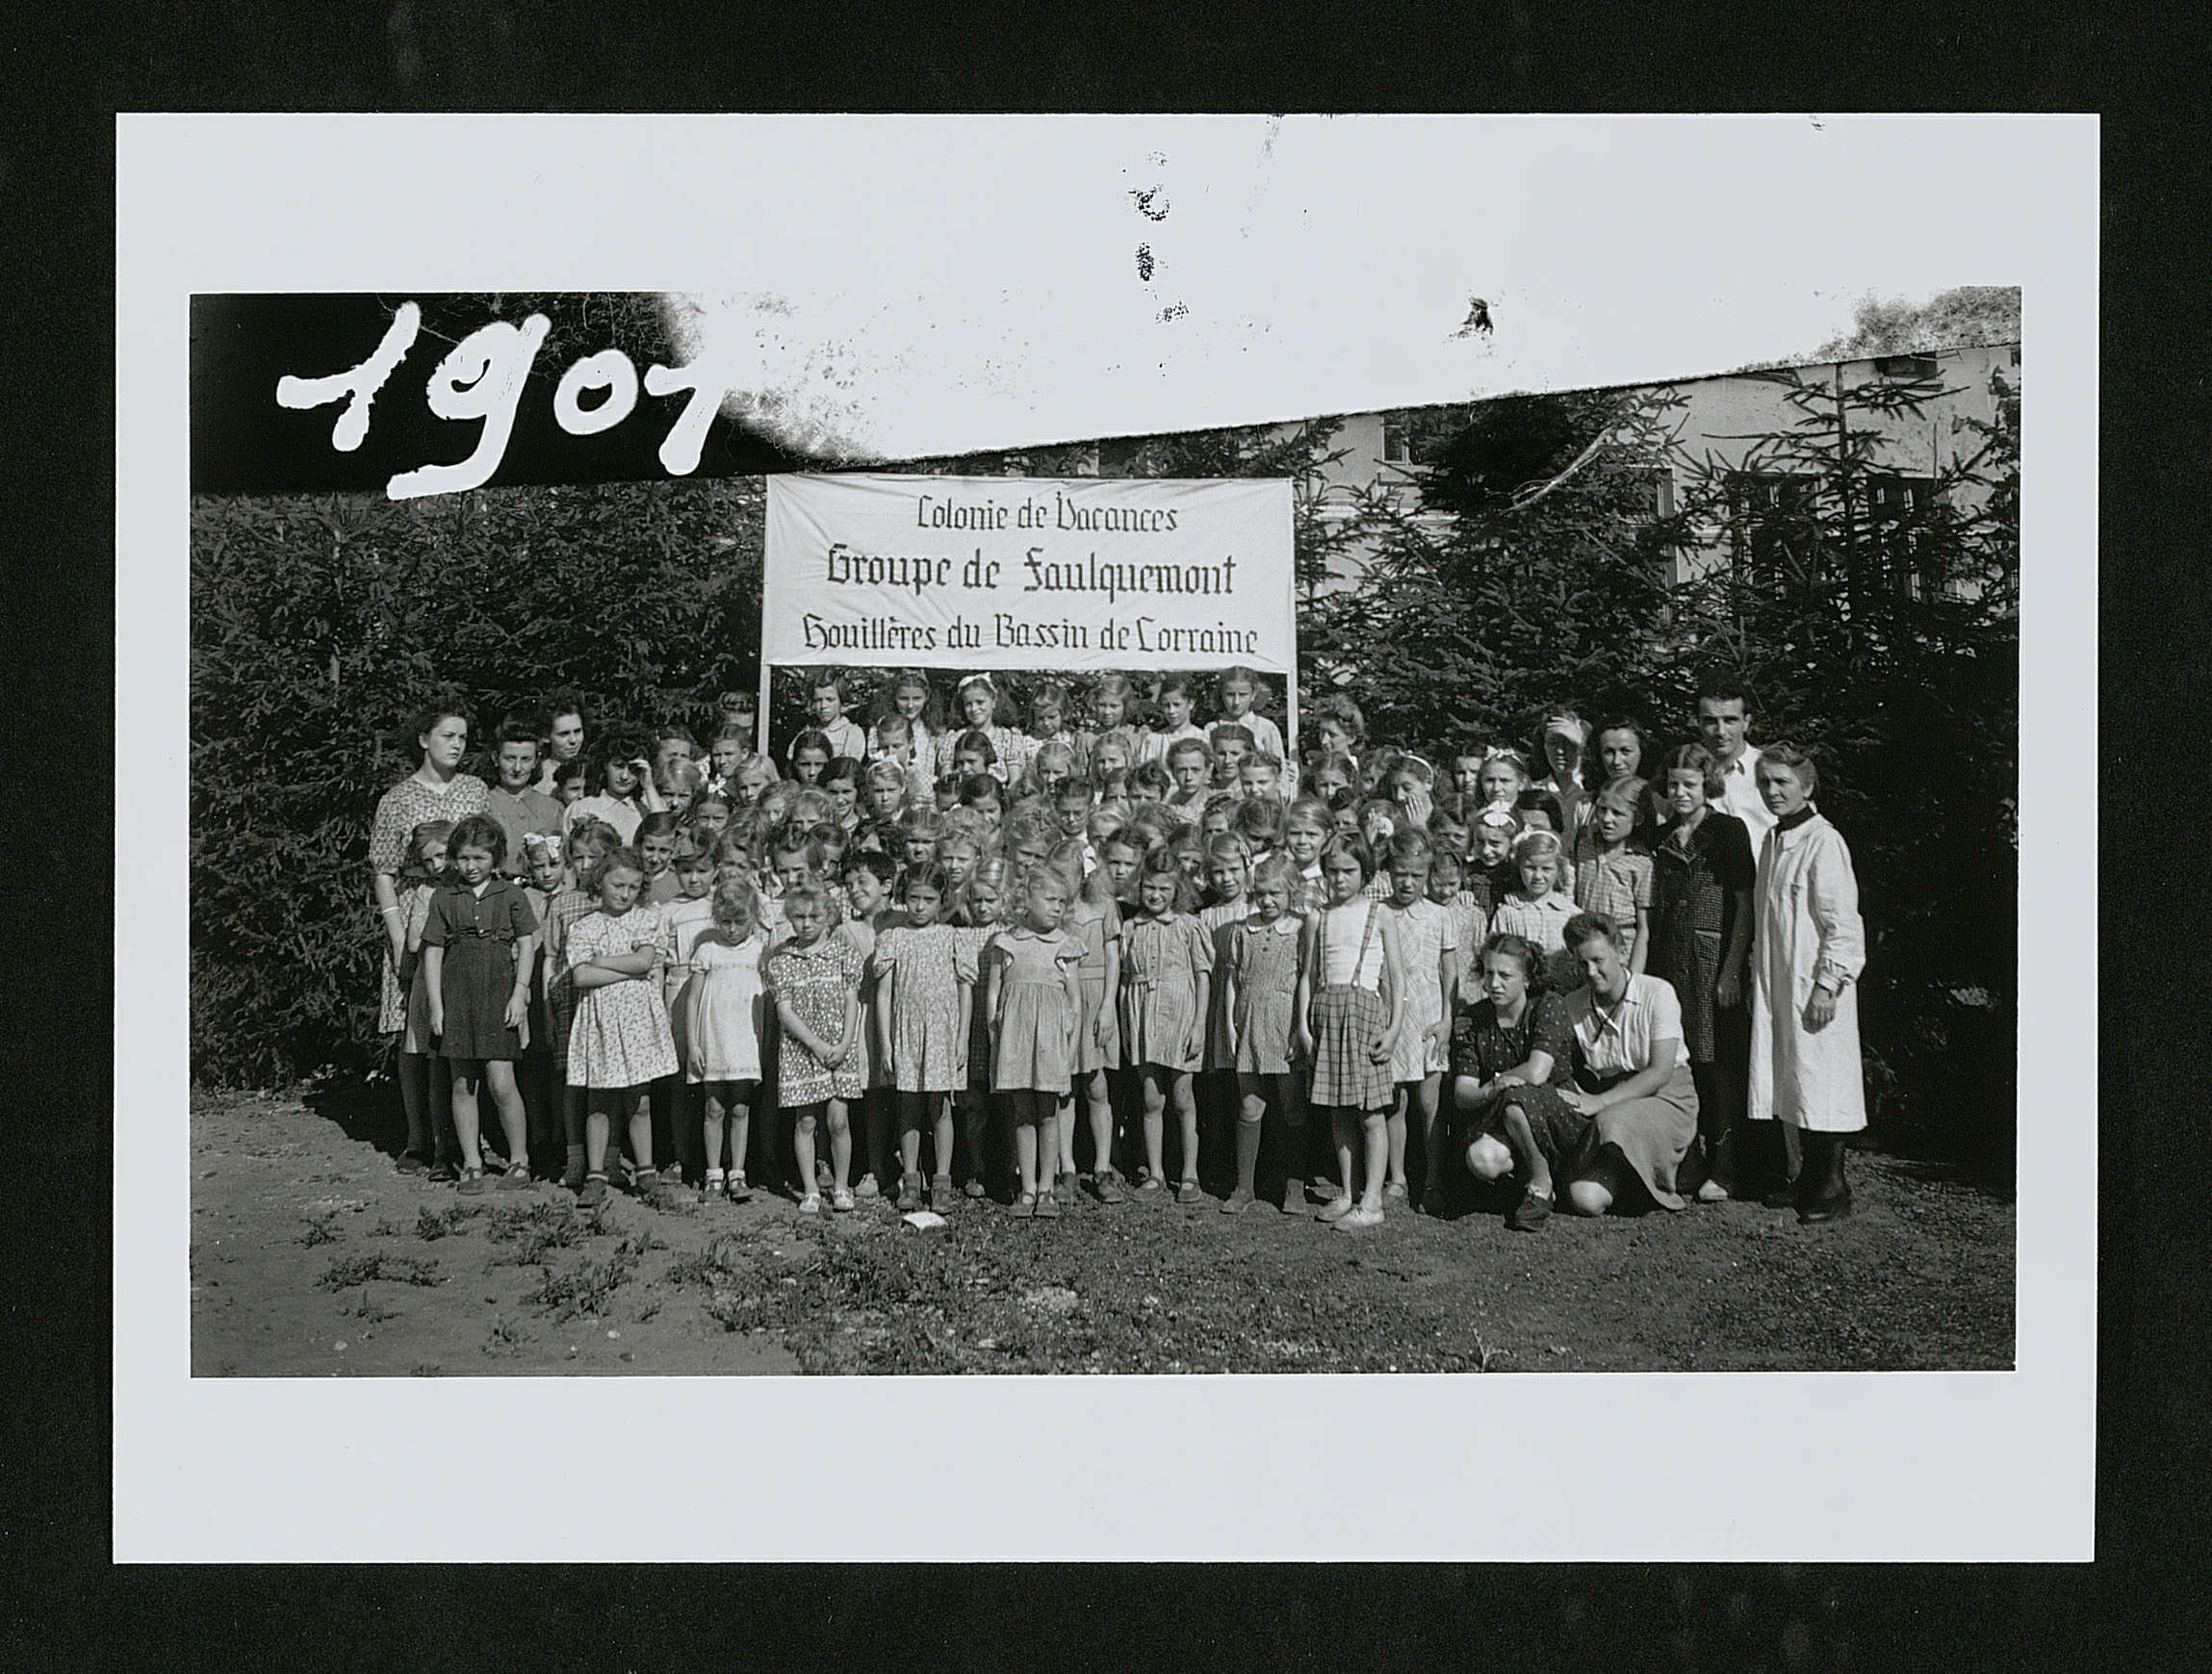 Groupe d'enfants en colonie de vacances : photographie, bassin minier de Lorraine, 1947.